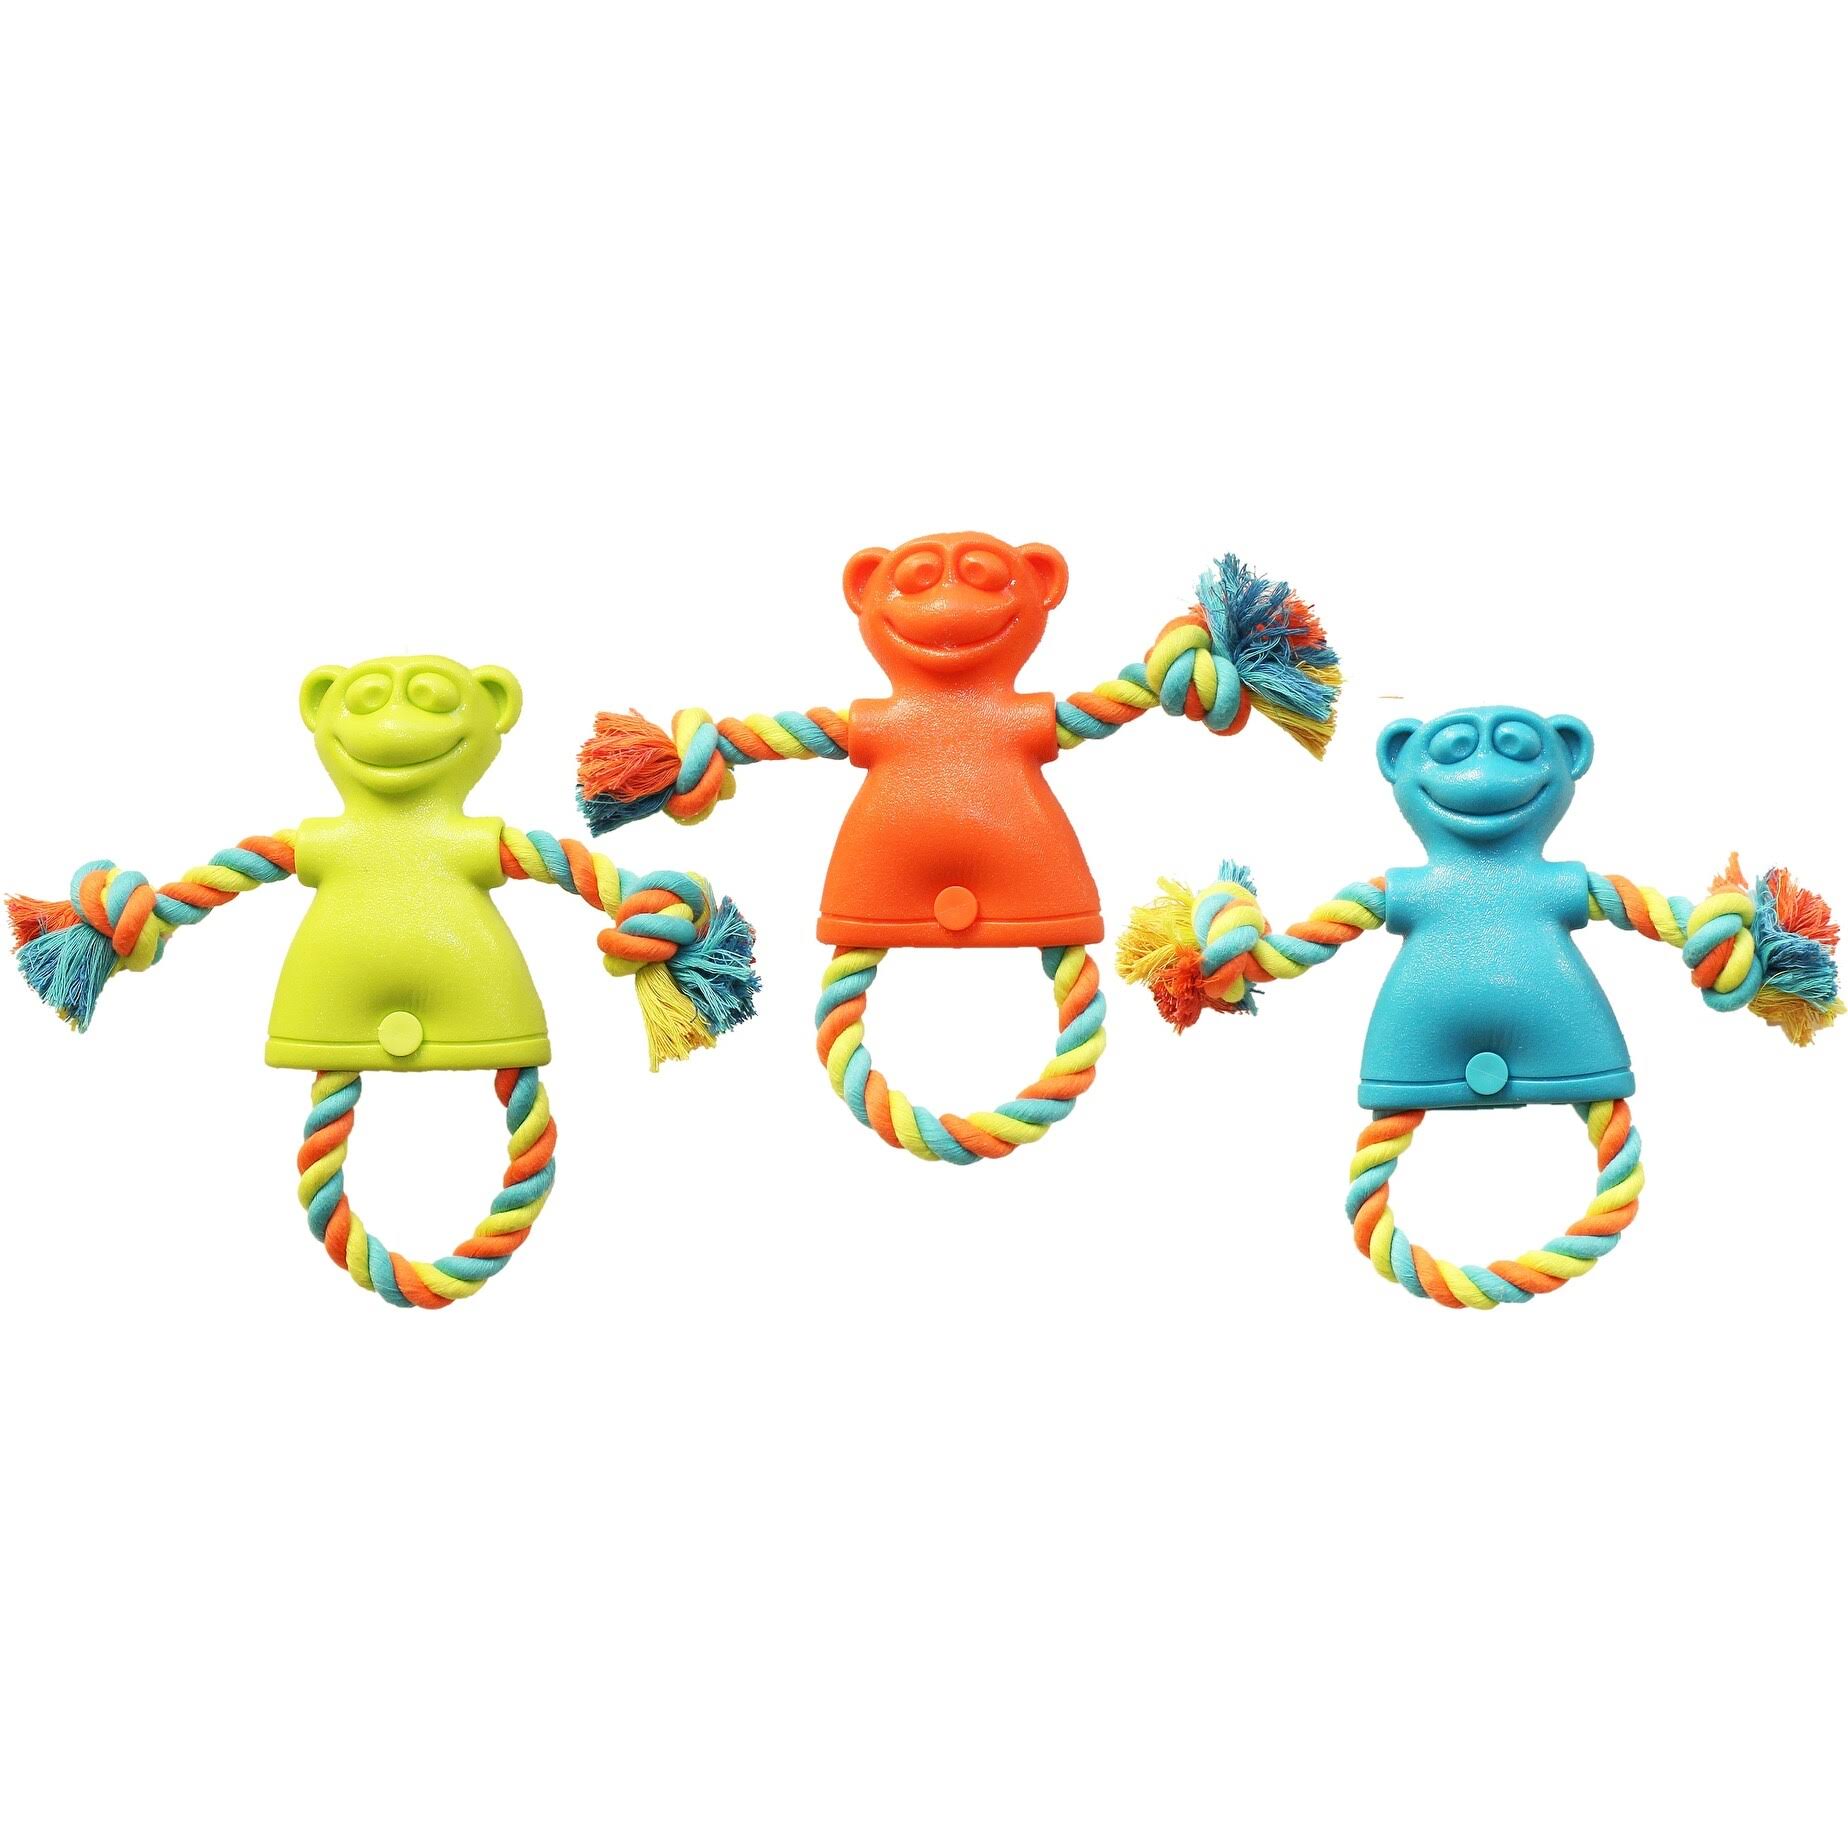 Chomper WB15502 Monkey Tug Dog Toy - Large, Assorted Colors